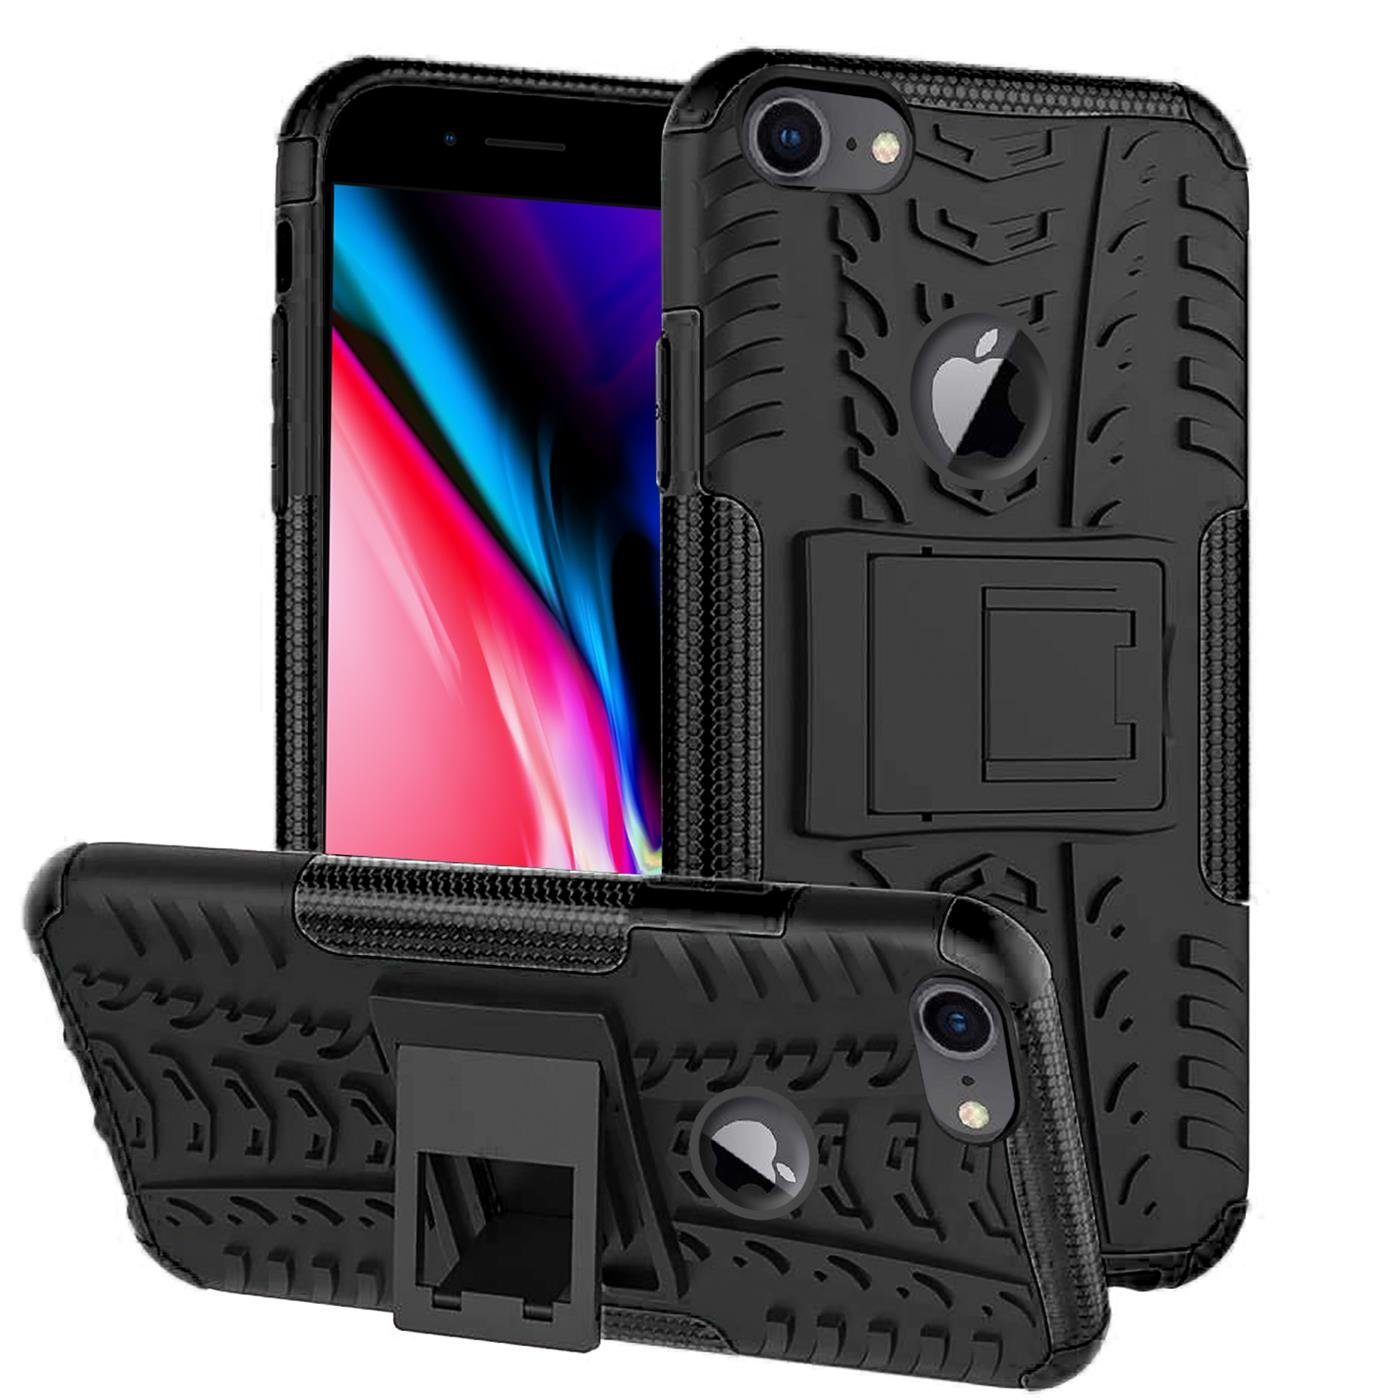 CoolGadget Handyhülle »Outdoor Case Hybrid Cover« für Apple iPhone 6 / 6S  4,7 Zoll, Schutzhülle extrem robust Case Handy Case für iPhone 6, iPhone 6S  Hülle online kaufen | OTTO